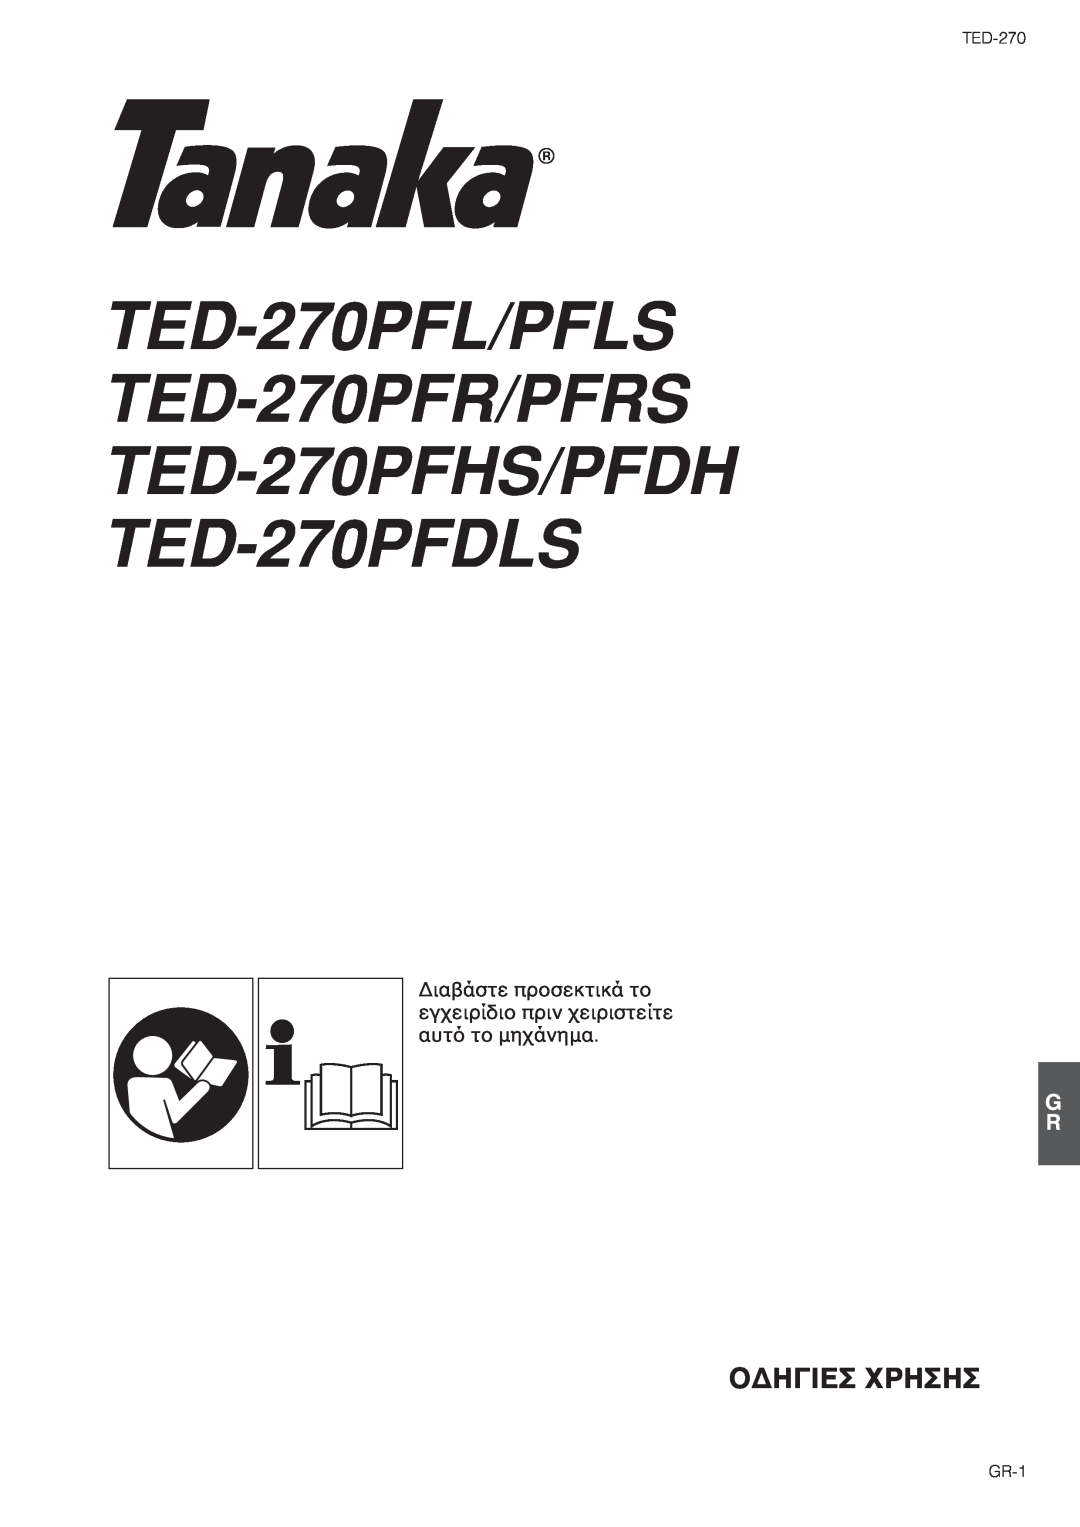 Tanaka ƒÊâã¡ÔõæÑóðôæìõêì¡Õð, GR-1, TED-270PFL/PFLS TED-270PFR/PFRS TED-270PFHS/PFDH TED-270PFDLS, ¤ƒ™‚š—‹­¥™‹™‹ 